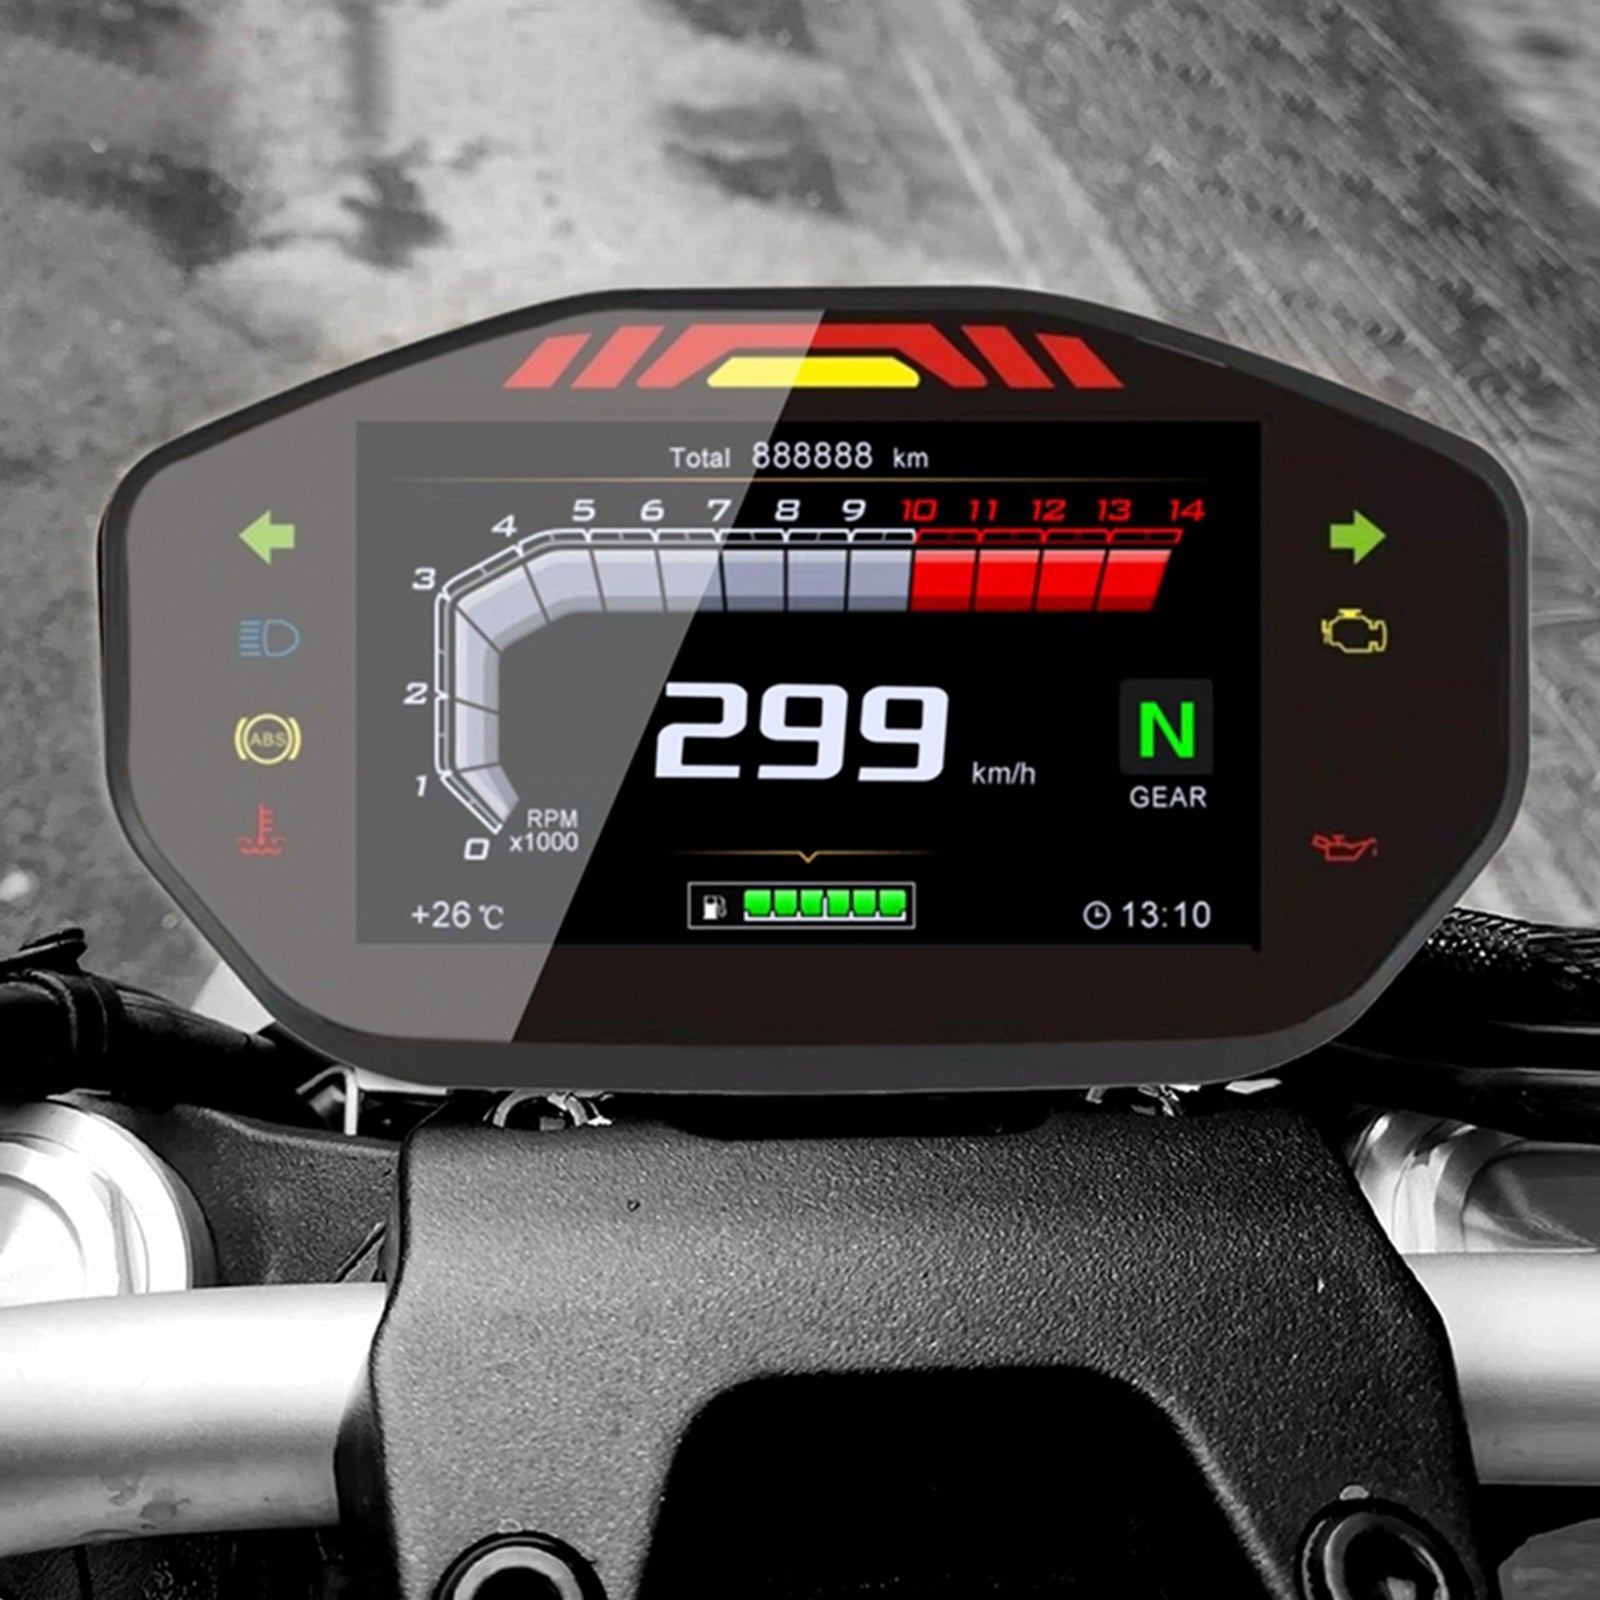 Universale Moto Lcd Rpm Display Digitale Contachilometri Tachimetro Generico Retroilluminazione